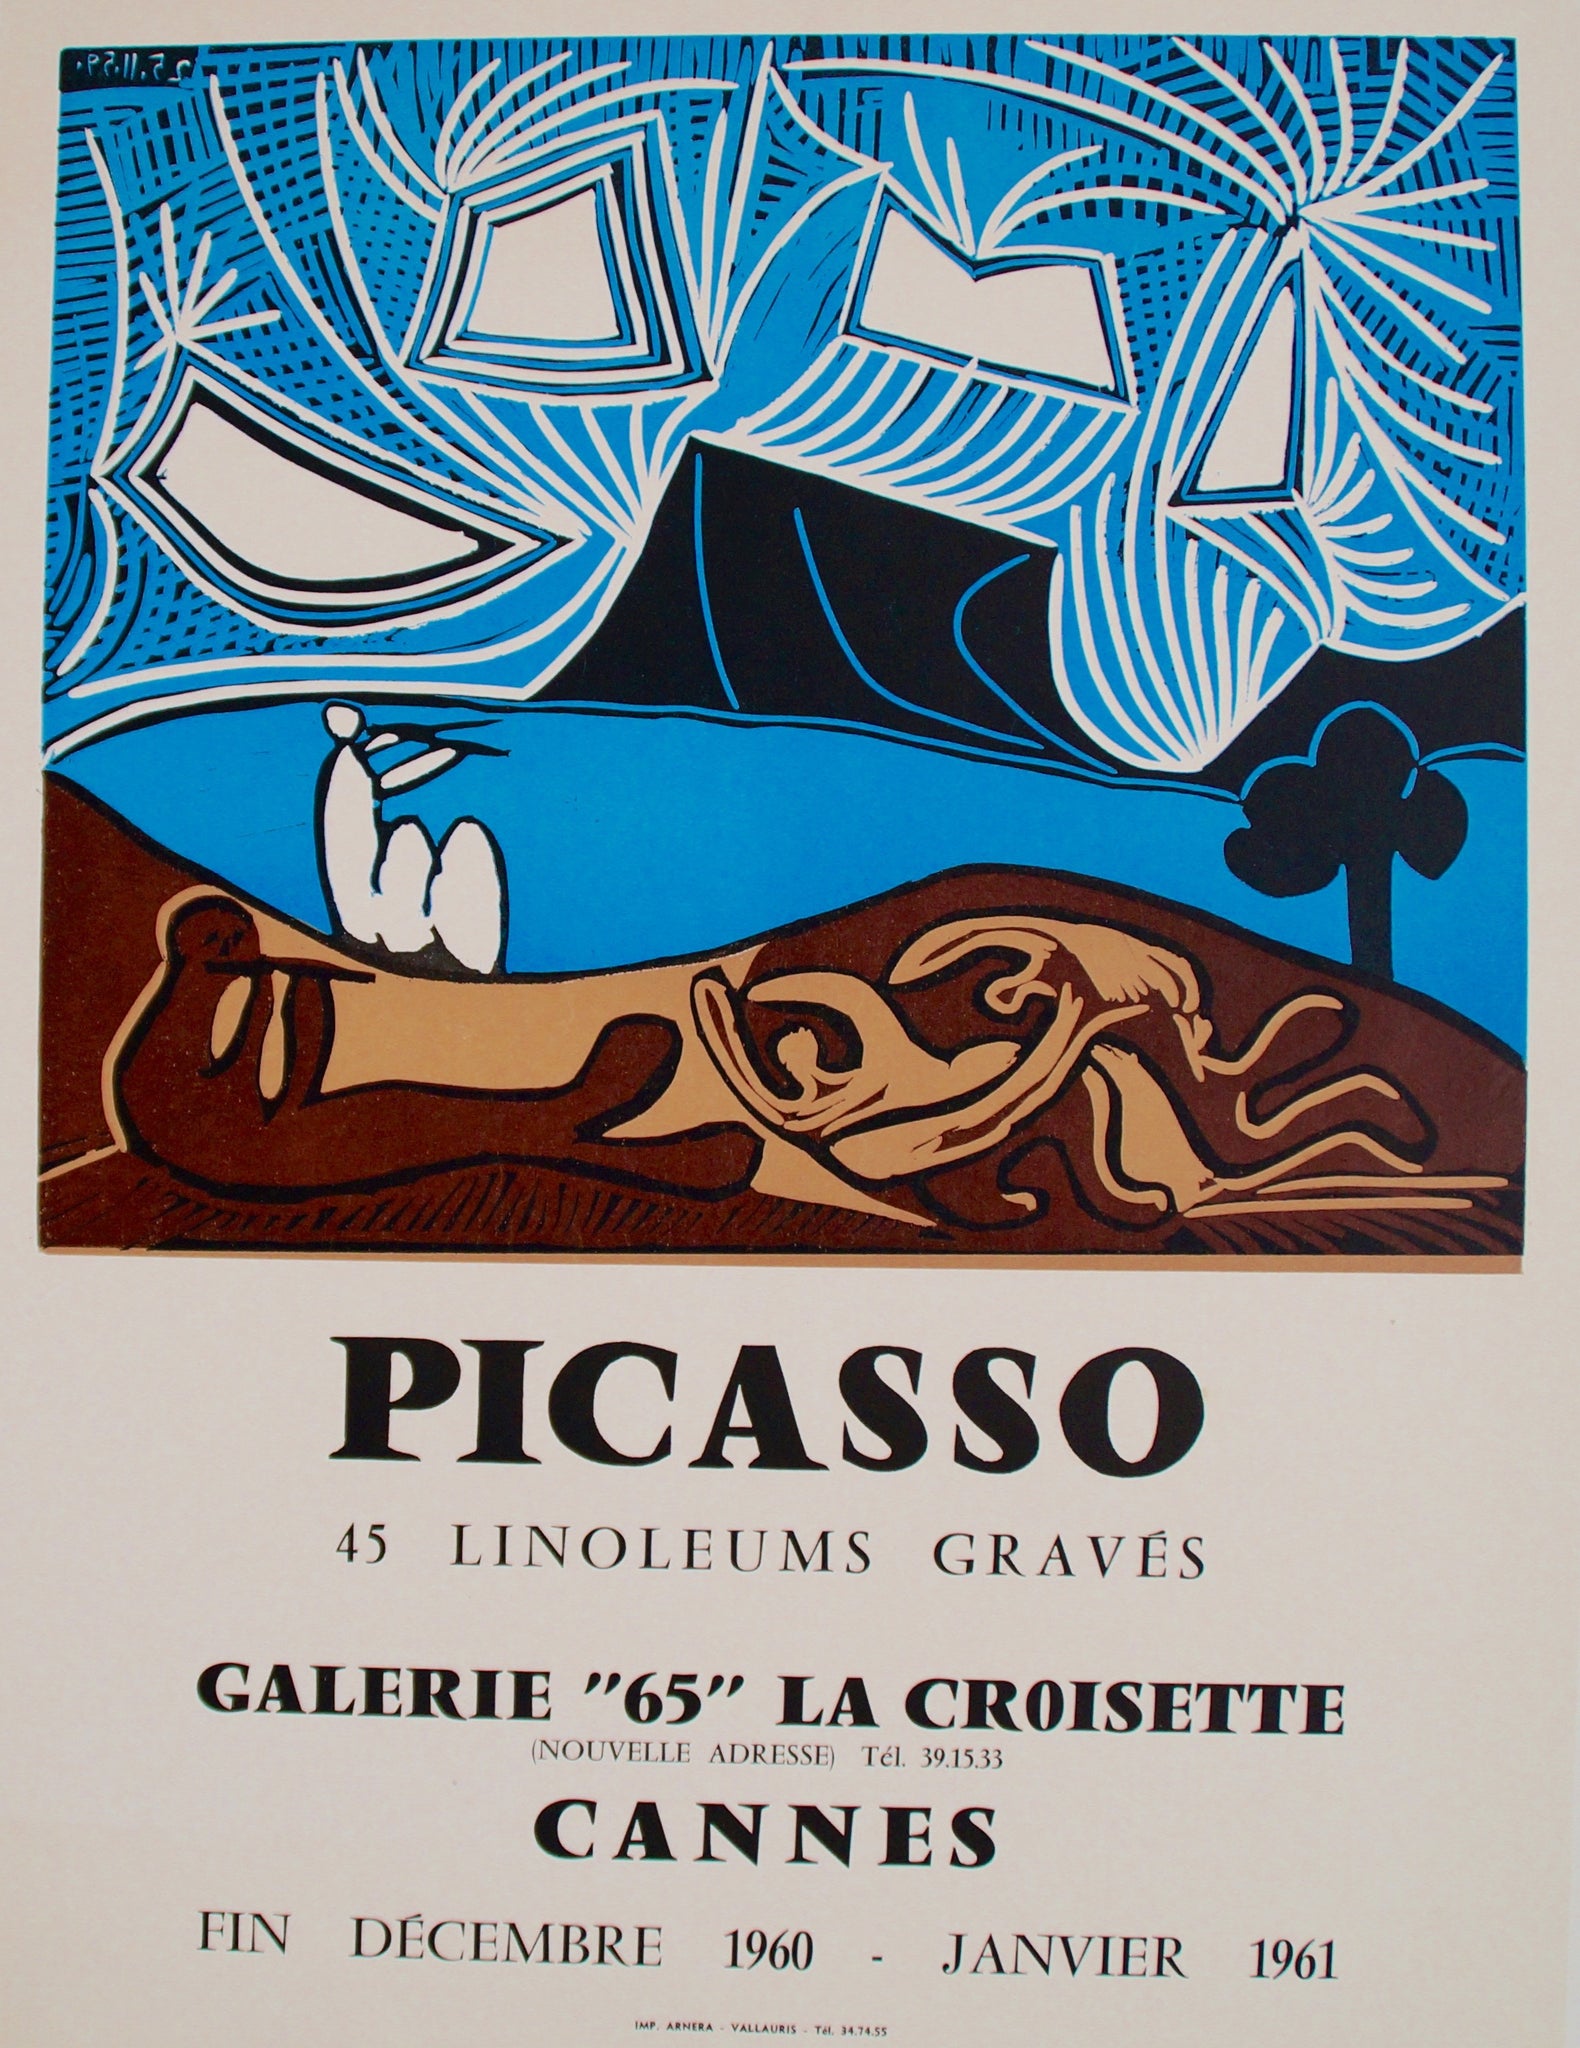 Affiche Galerie 65 - 45 Linoleums gravés d'après Picasso, 1960